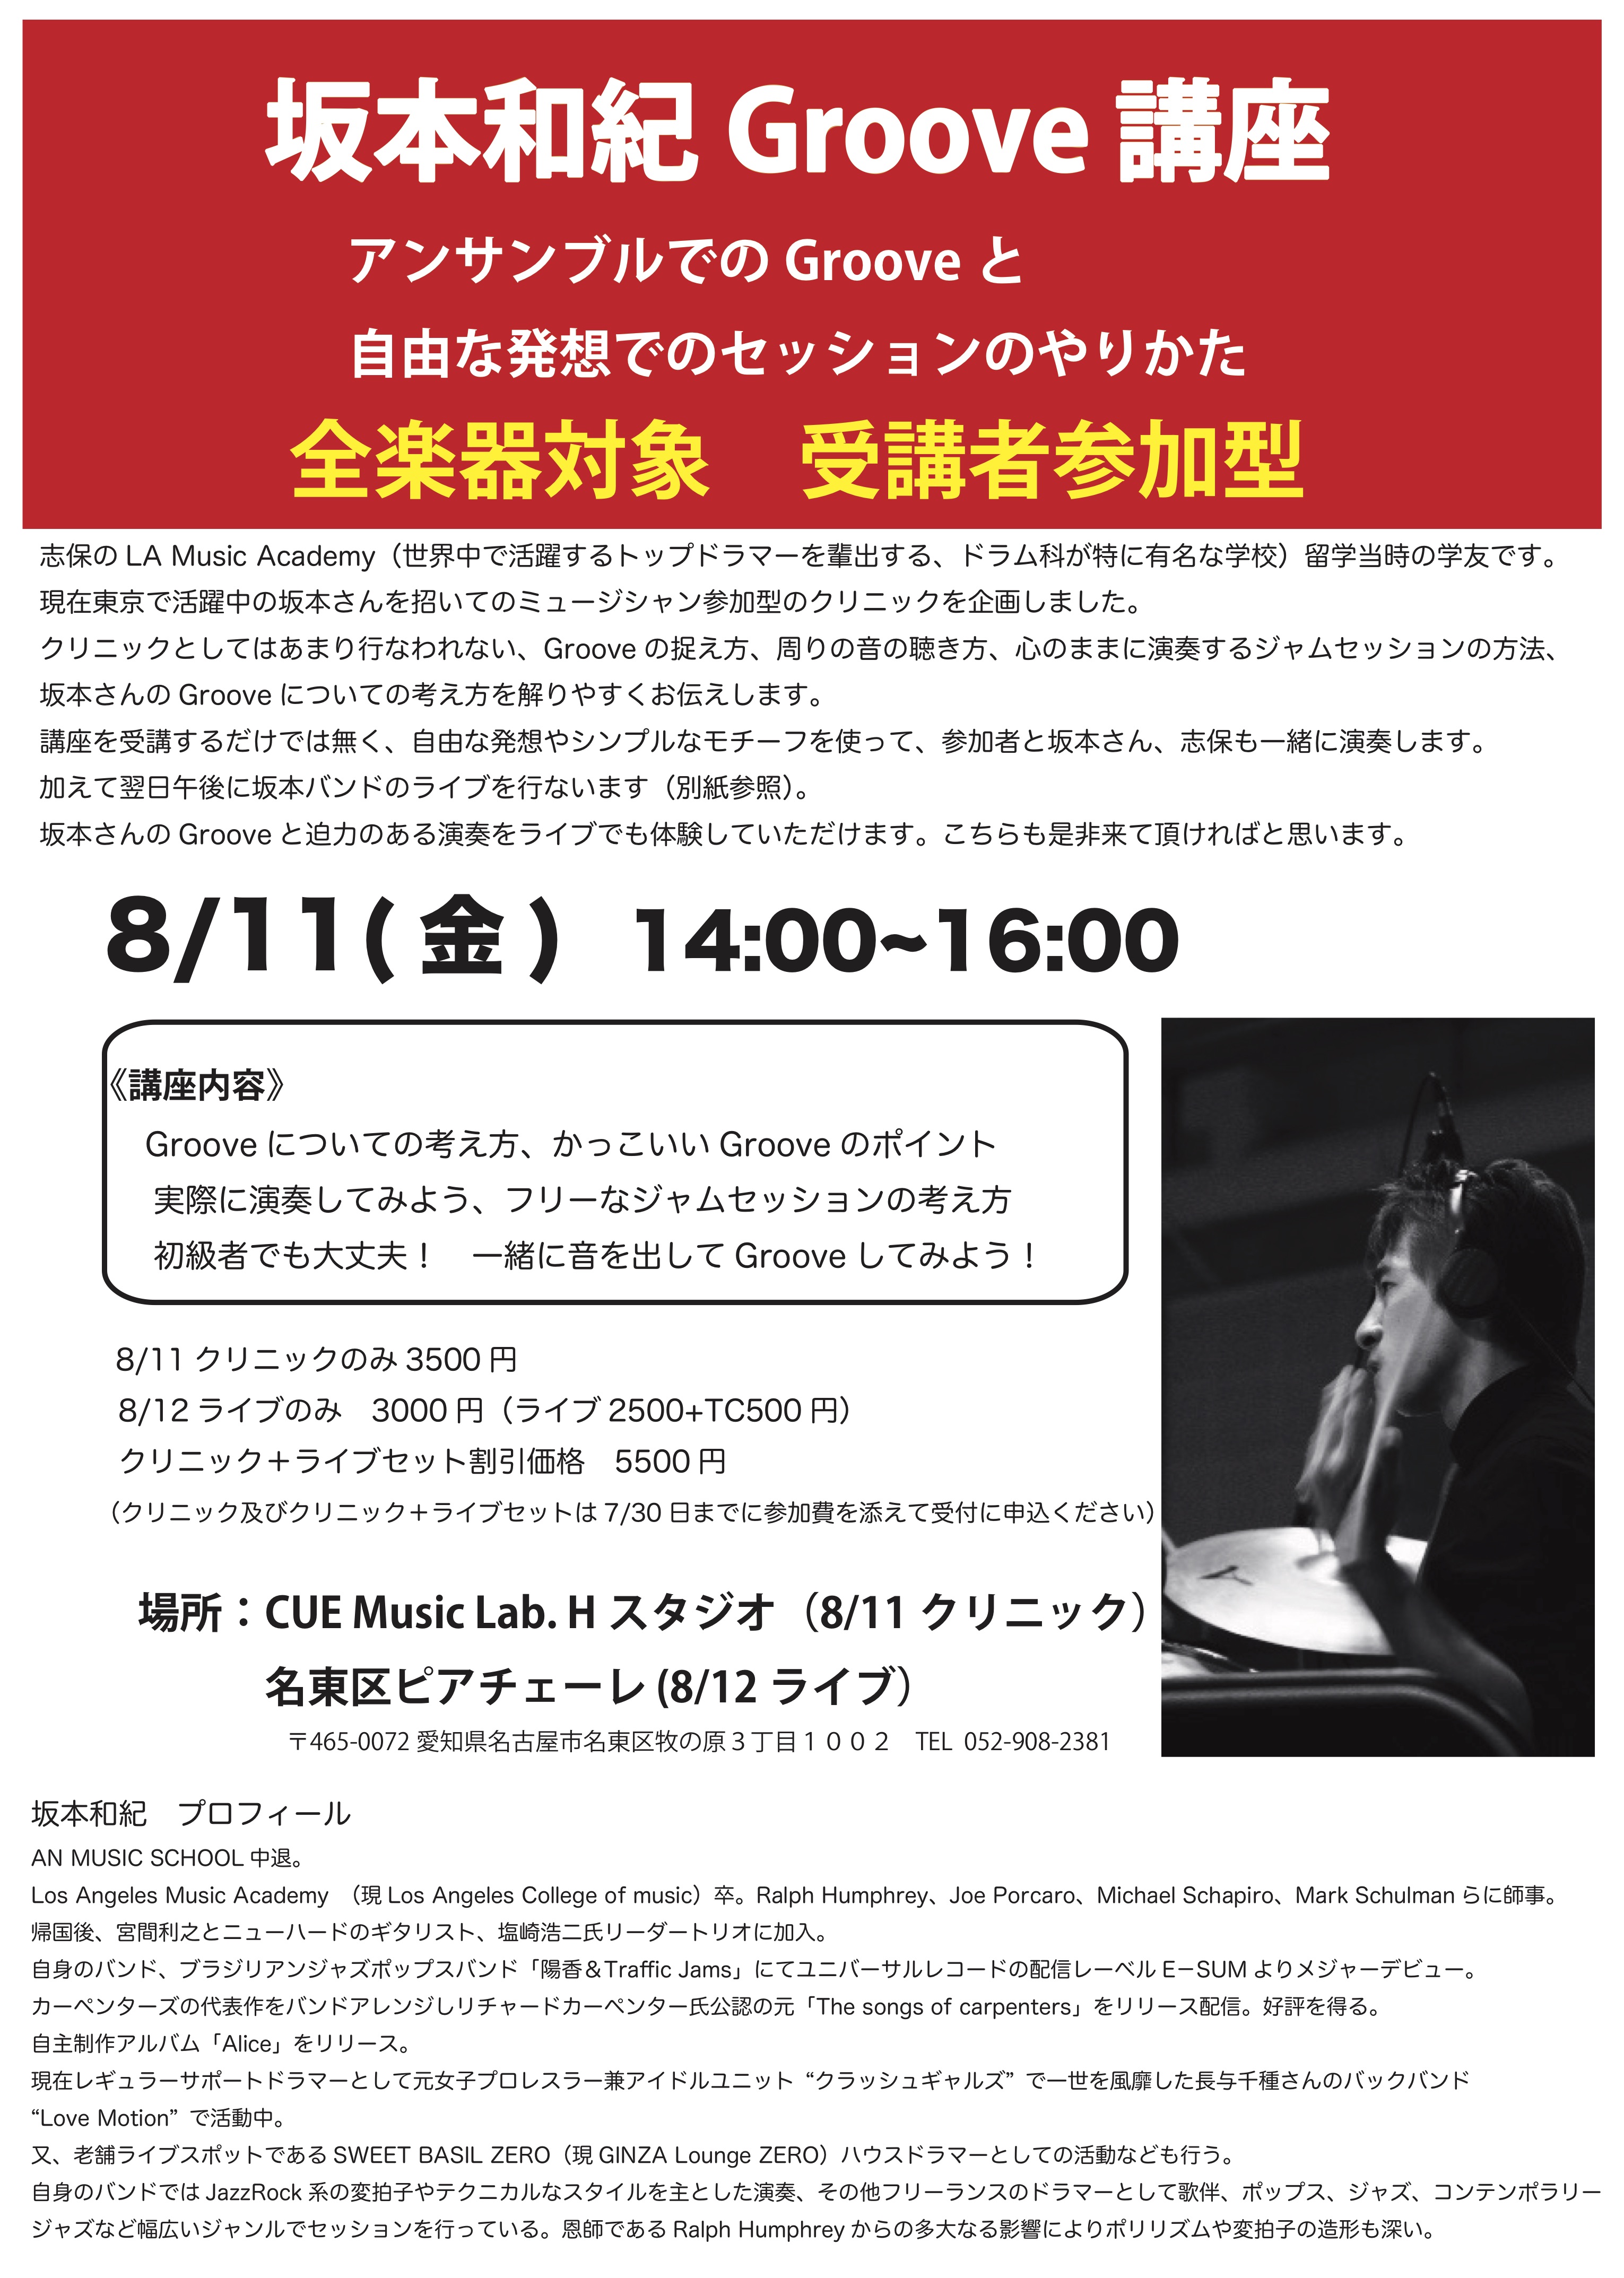 坂本和紀drums Groove講座 全楽器対象 参加型クリニッ 新着 イベント情報 名古屋の音楽教室キューミュージックラボ